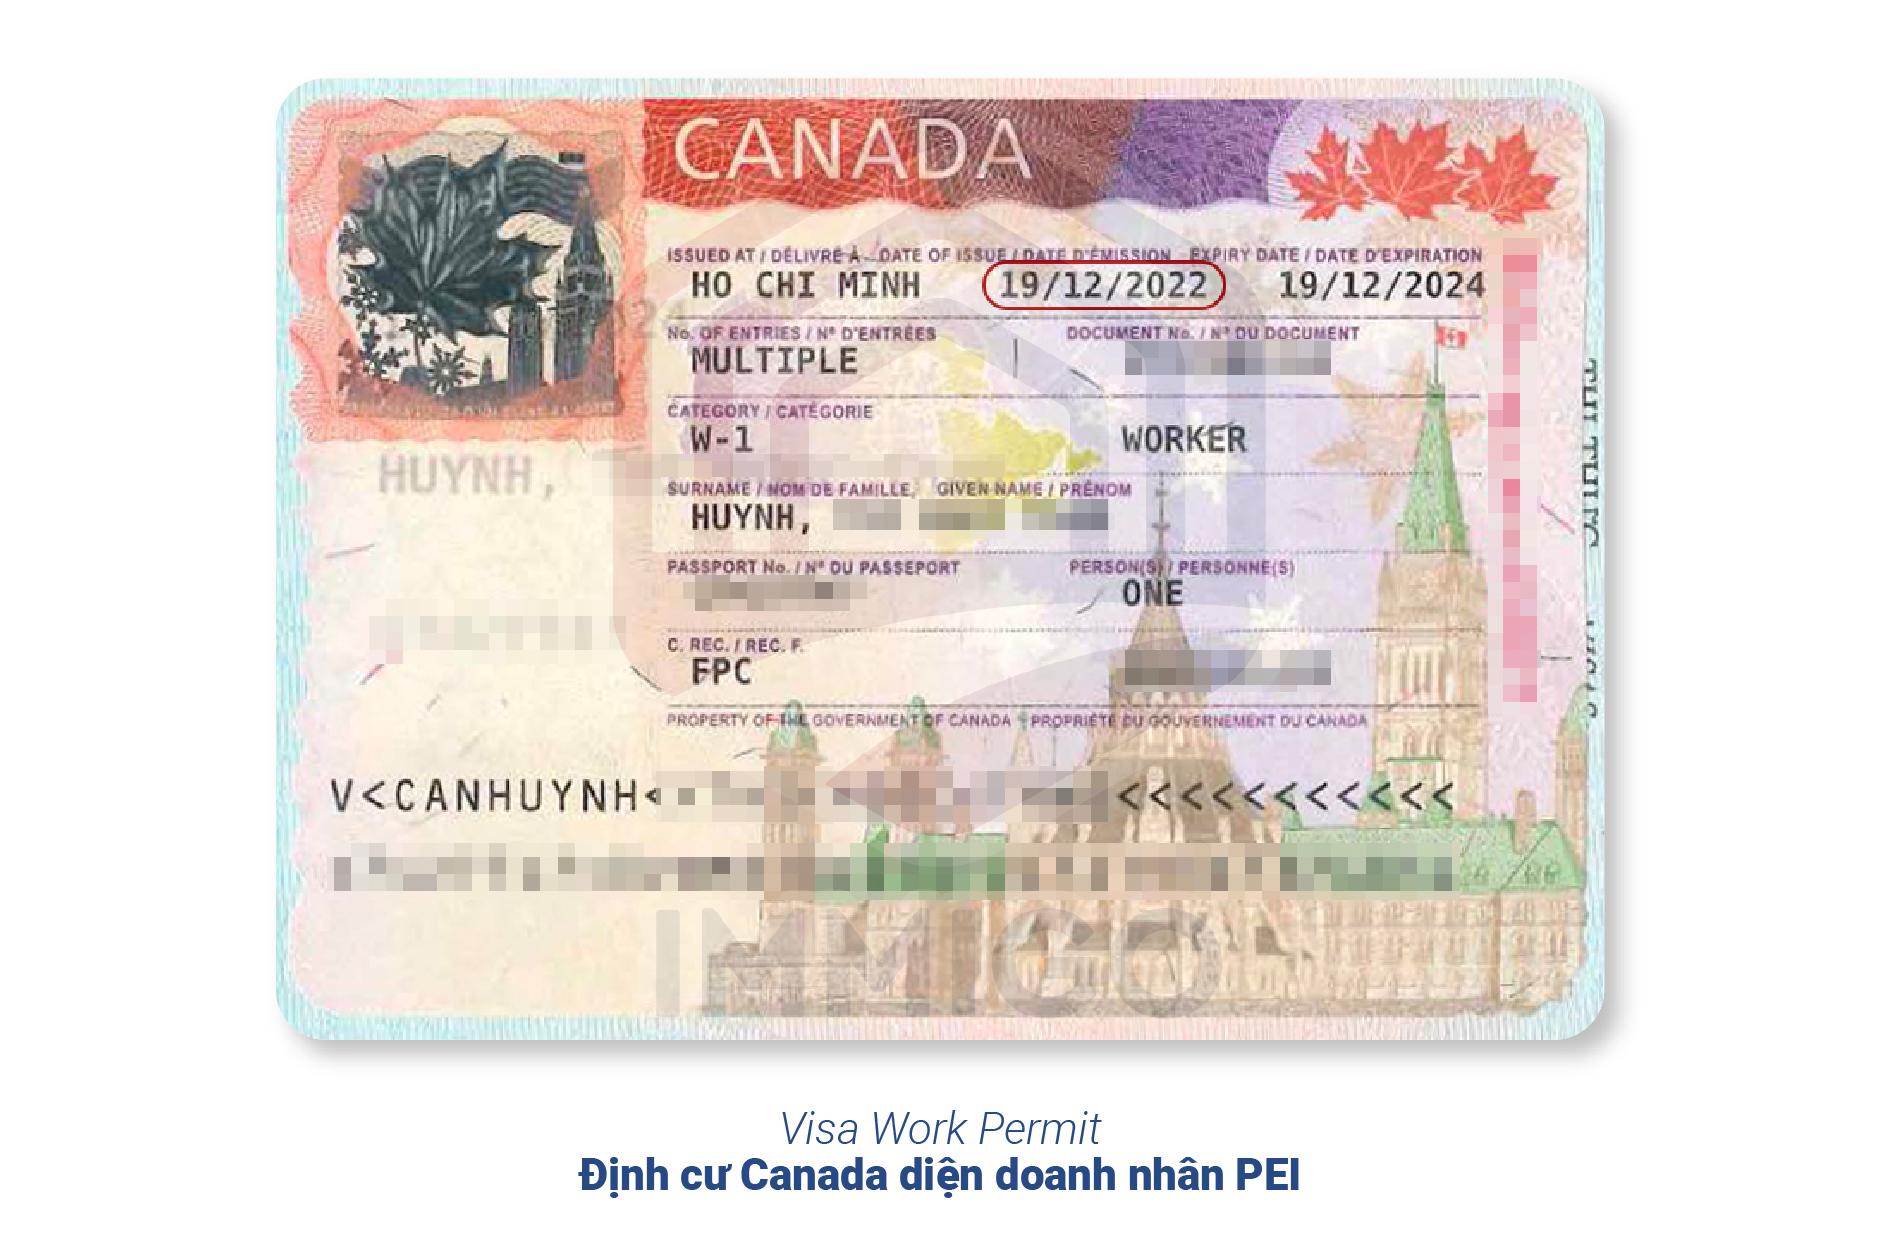 Visa Work Permit - Chương trình định cư Canada diện doanh nhân tỉnh bang PEI